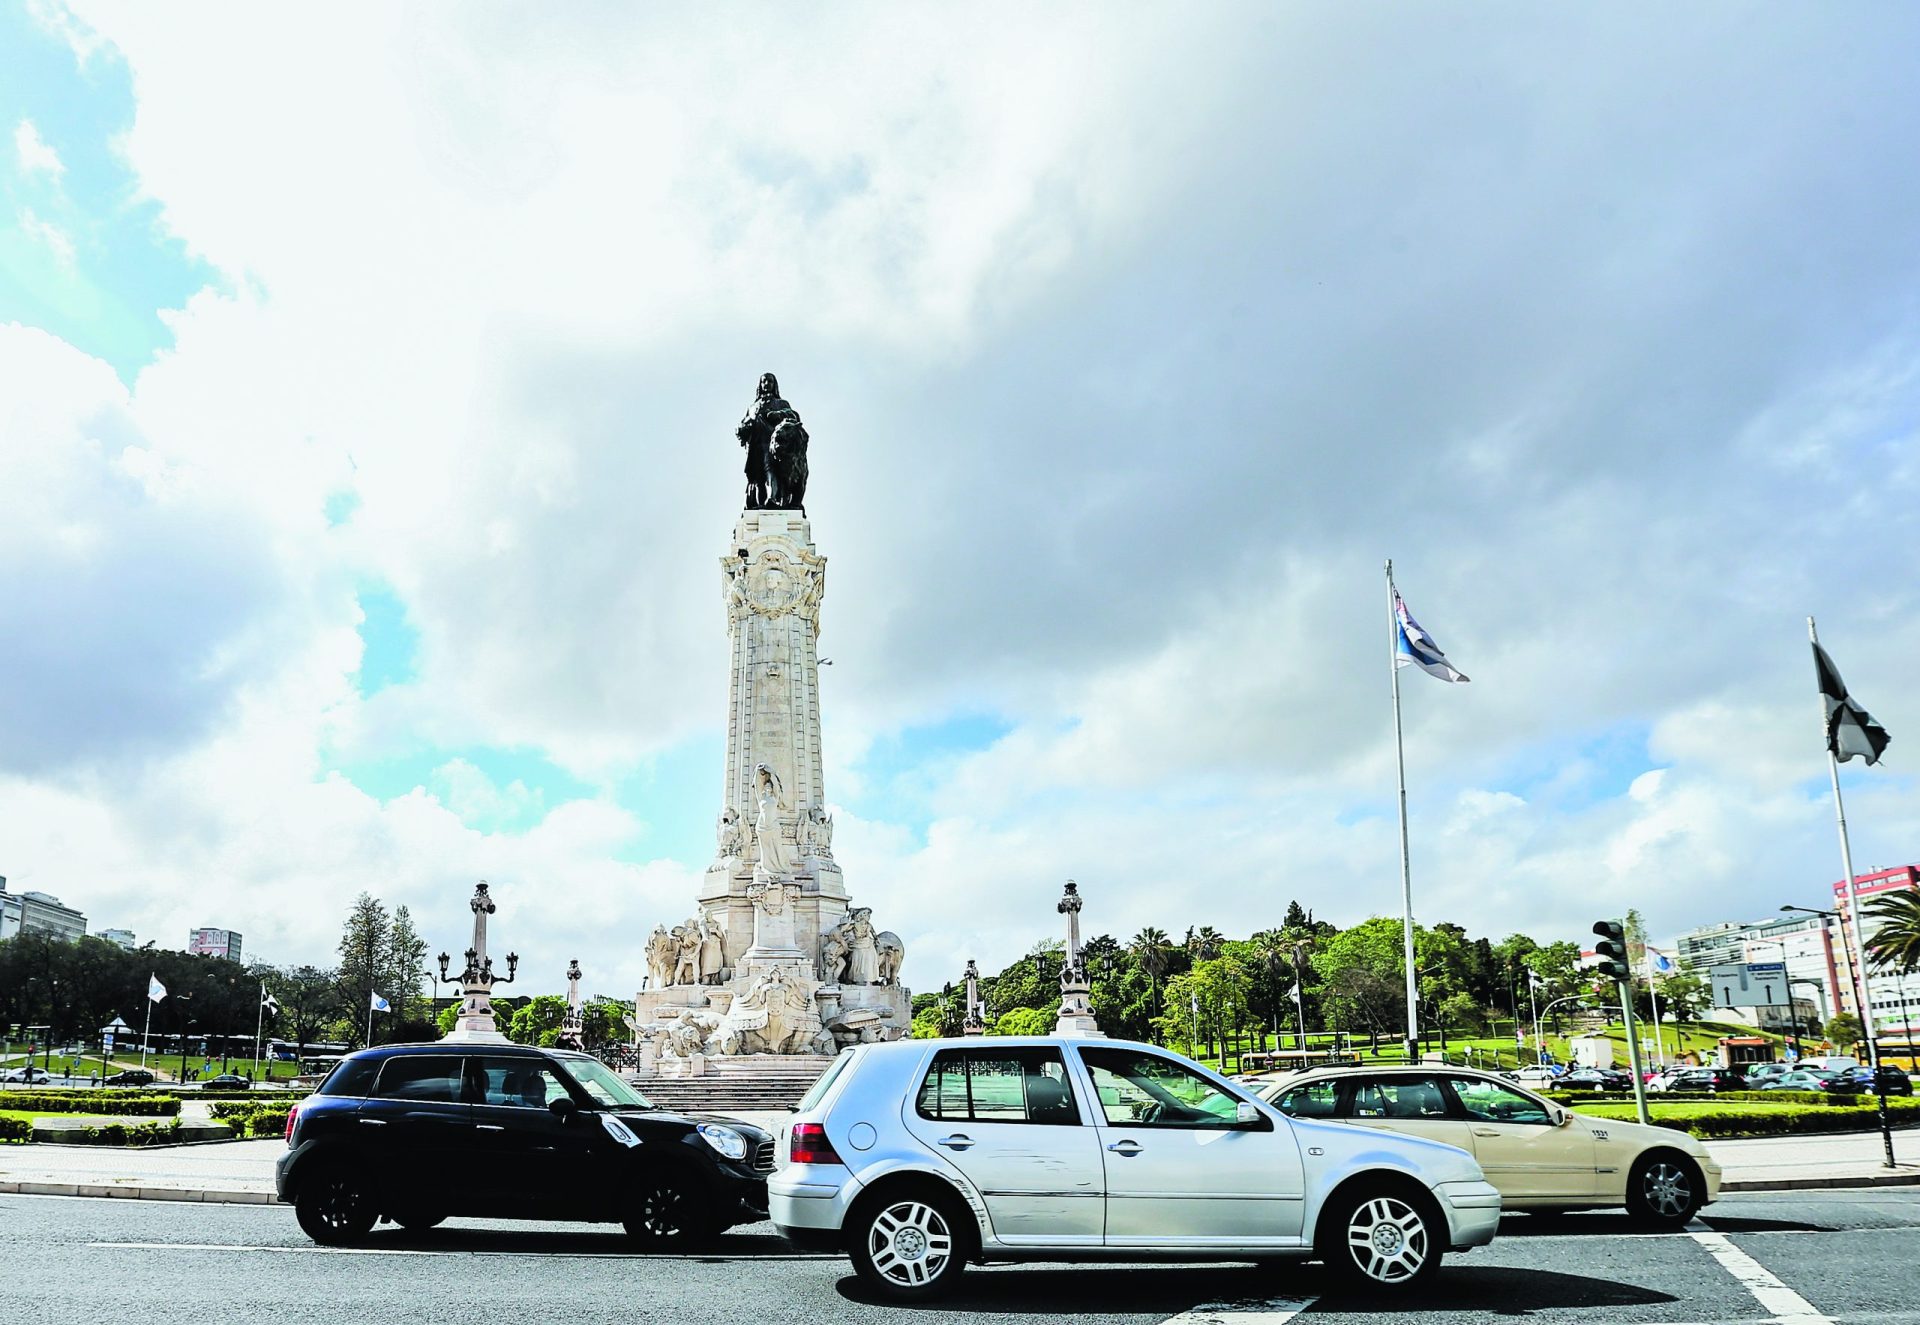 Restrições de carros em Lisboa decidida de forma ilegal